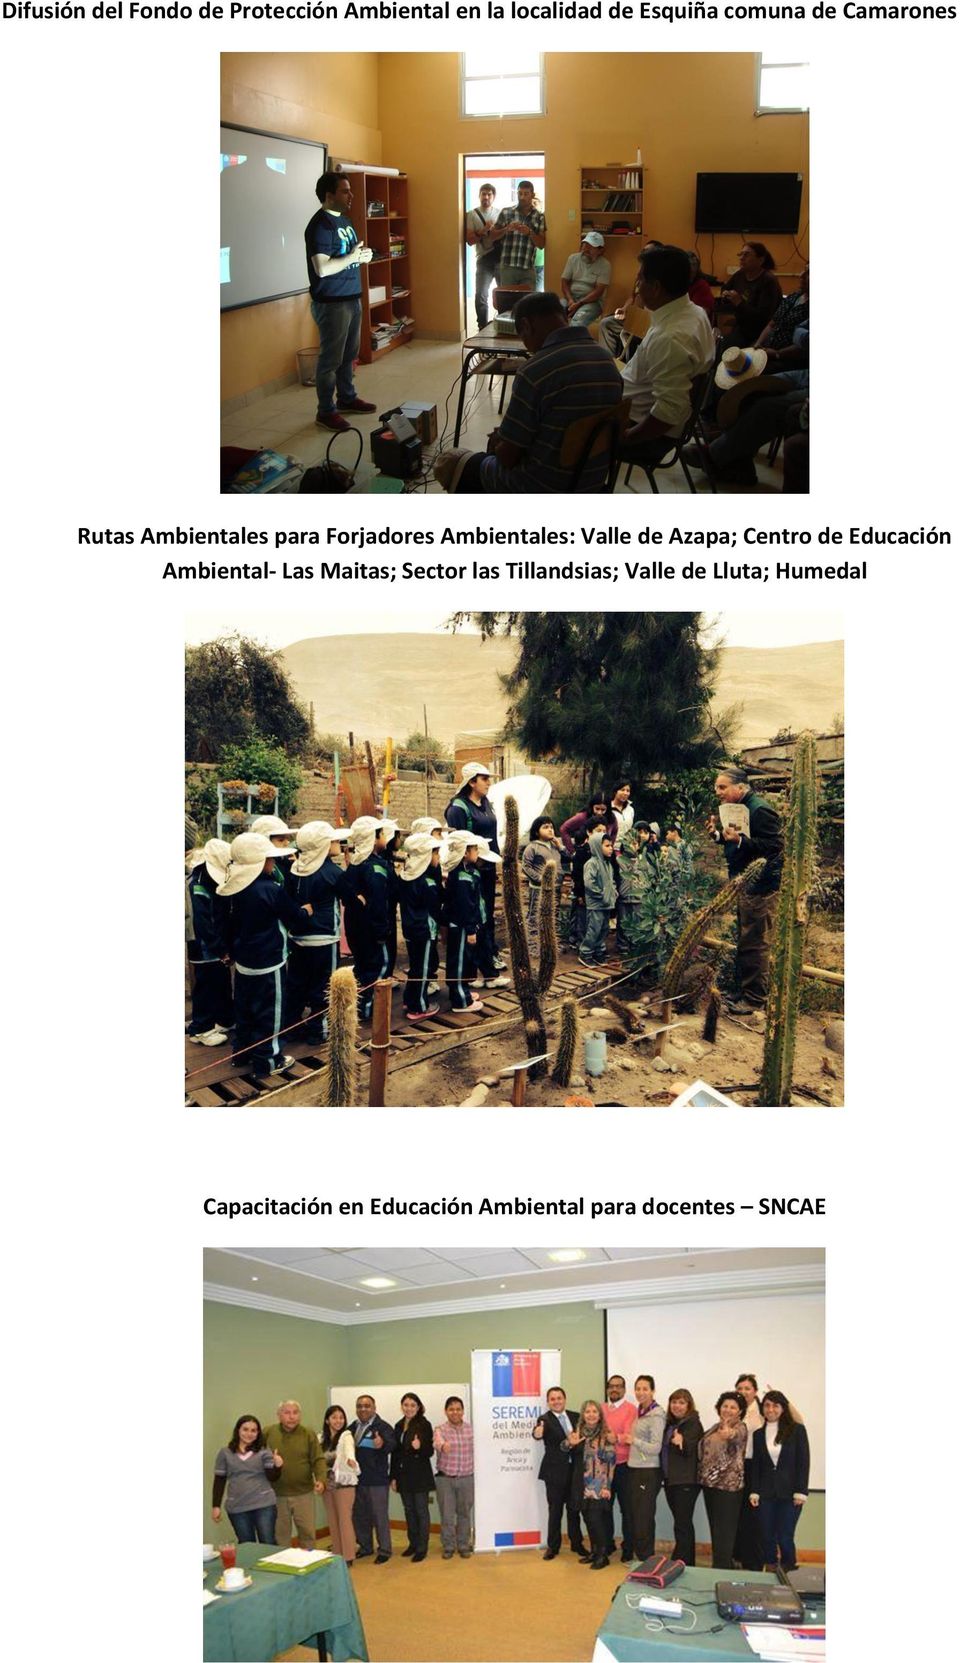 de Azapa; Centro de Educación Ambiental- Las Maitas; Sector las